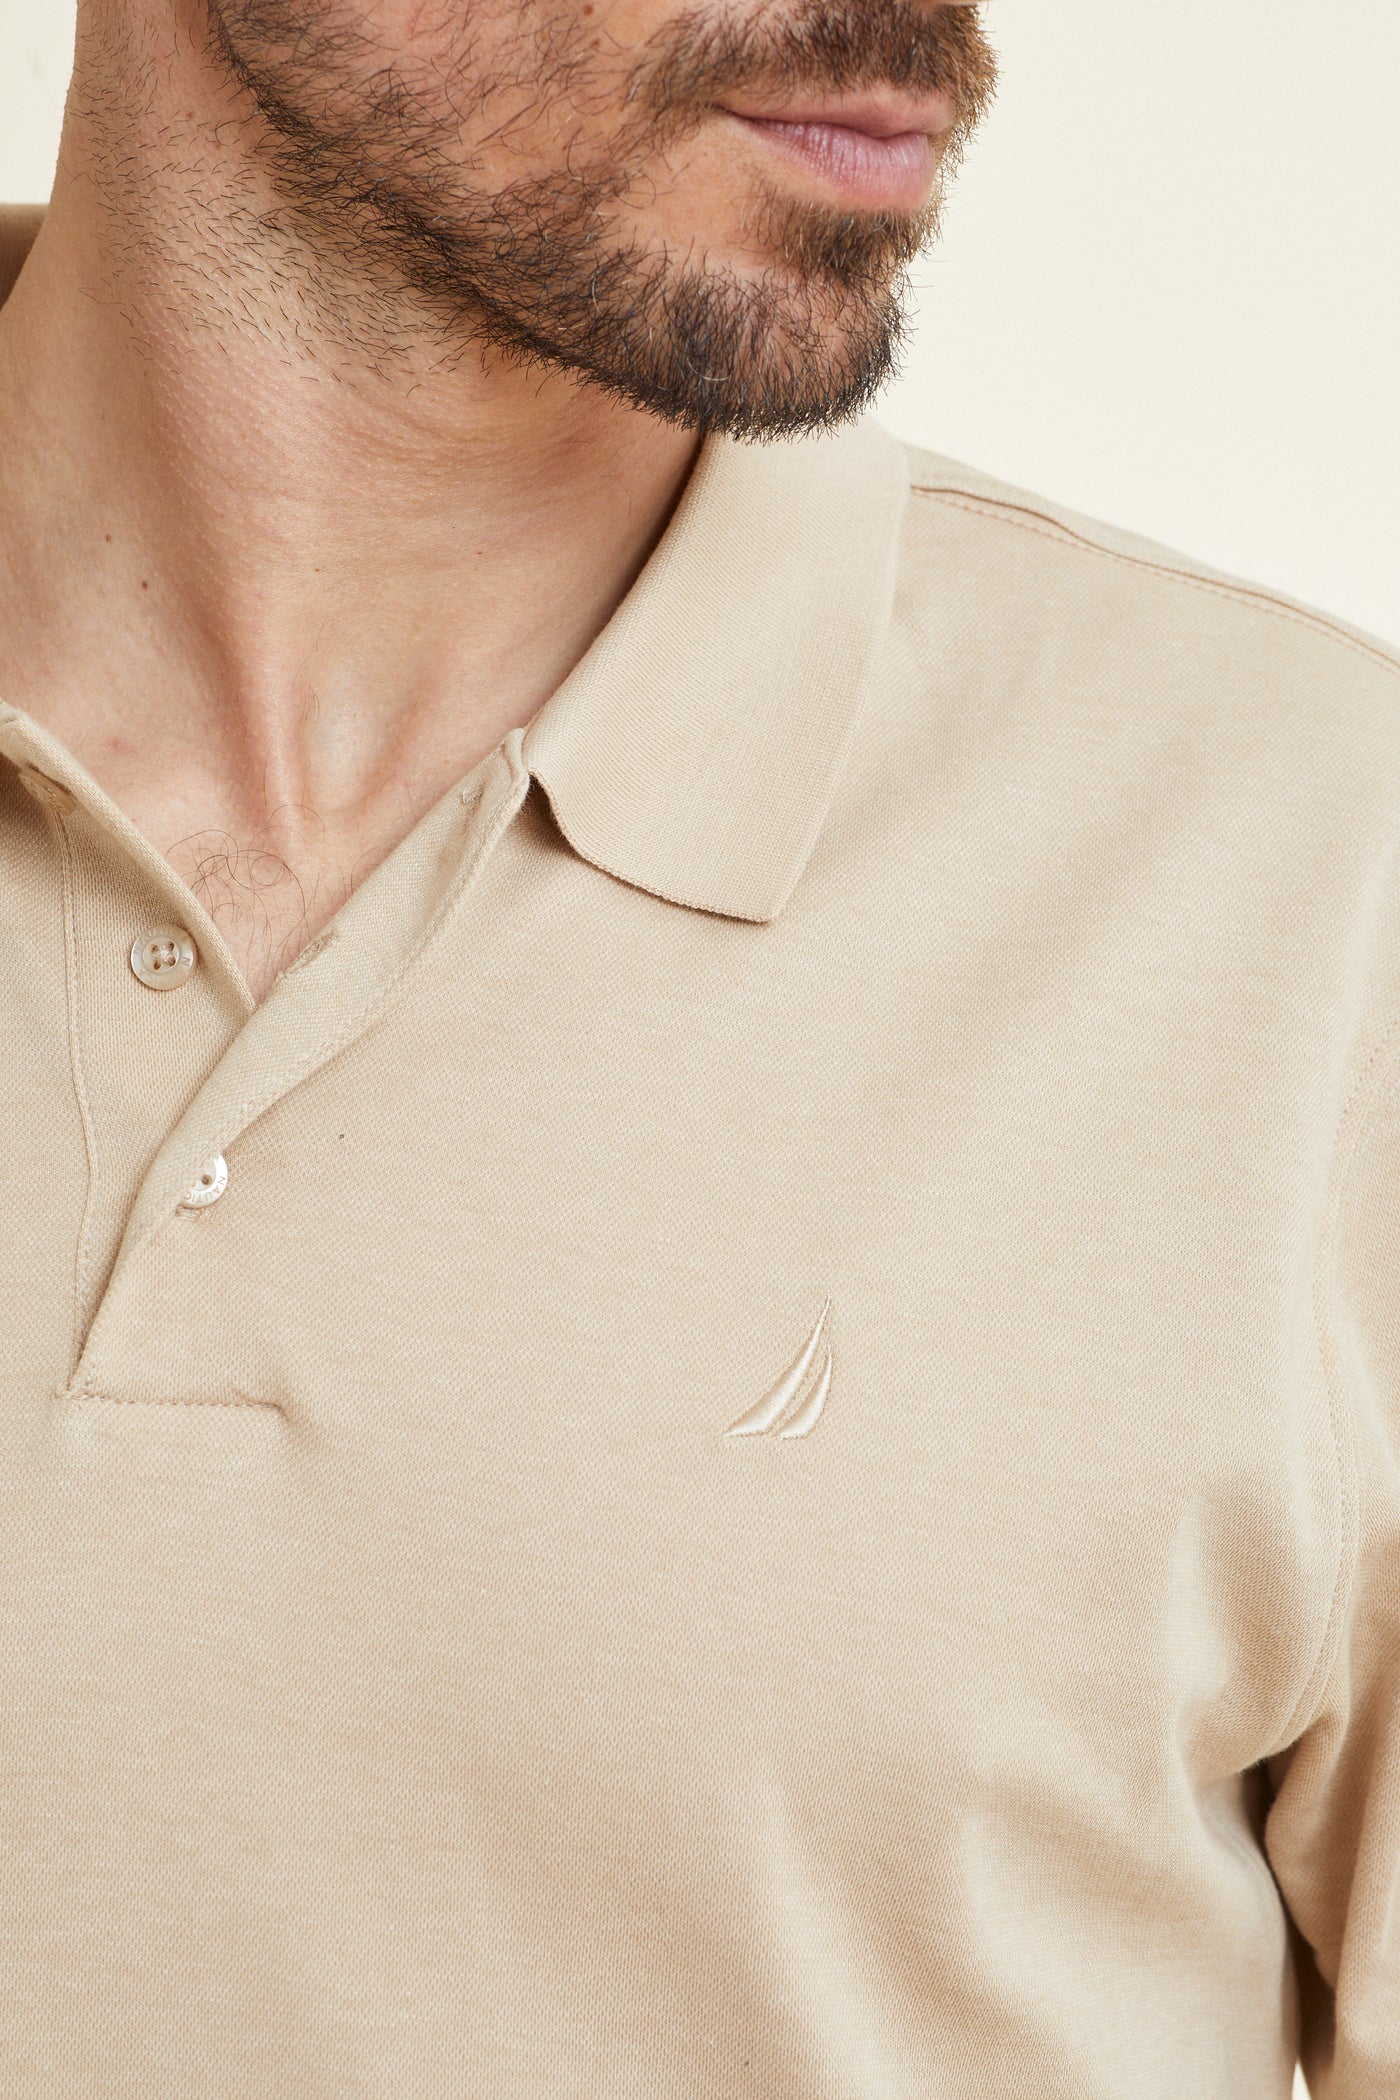 חולצת פולו REGULAR FIT  שרוול קצר בצבע אבן